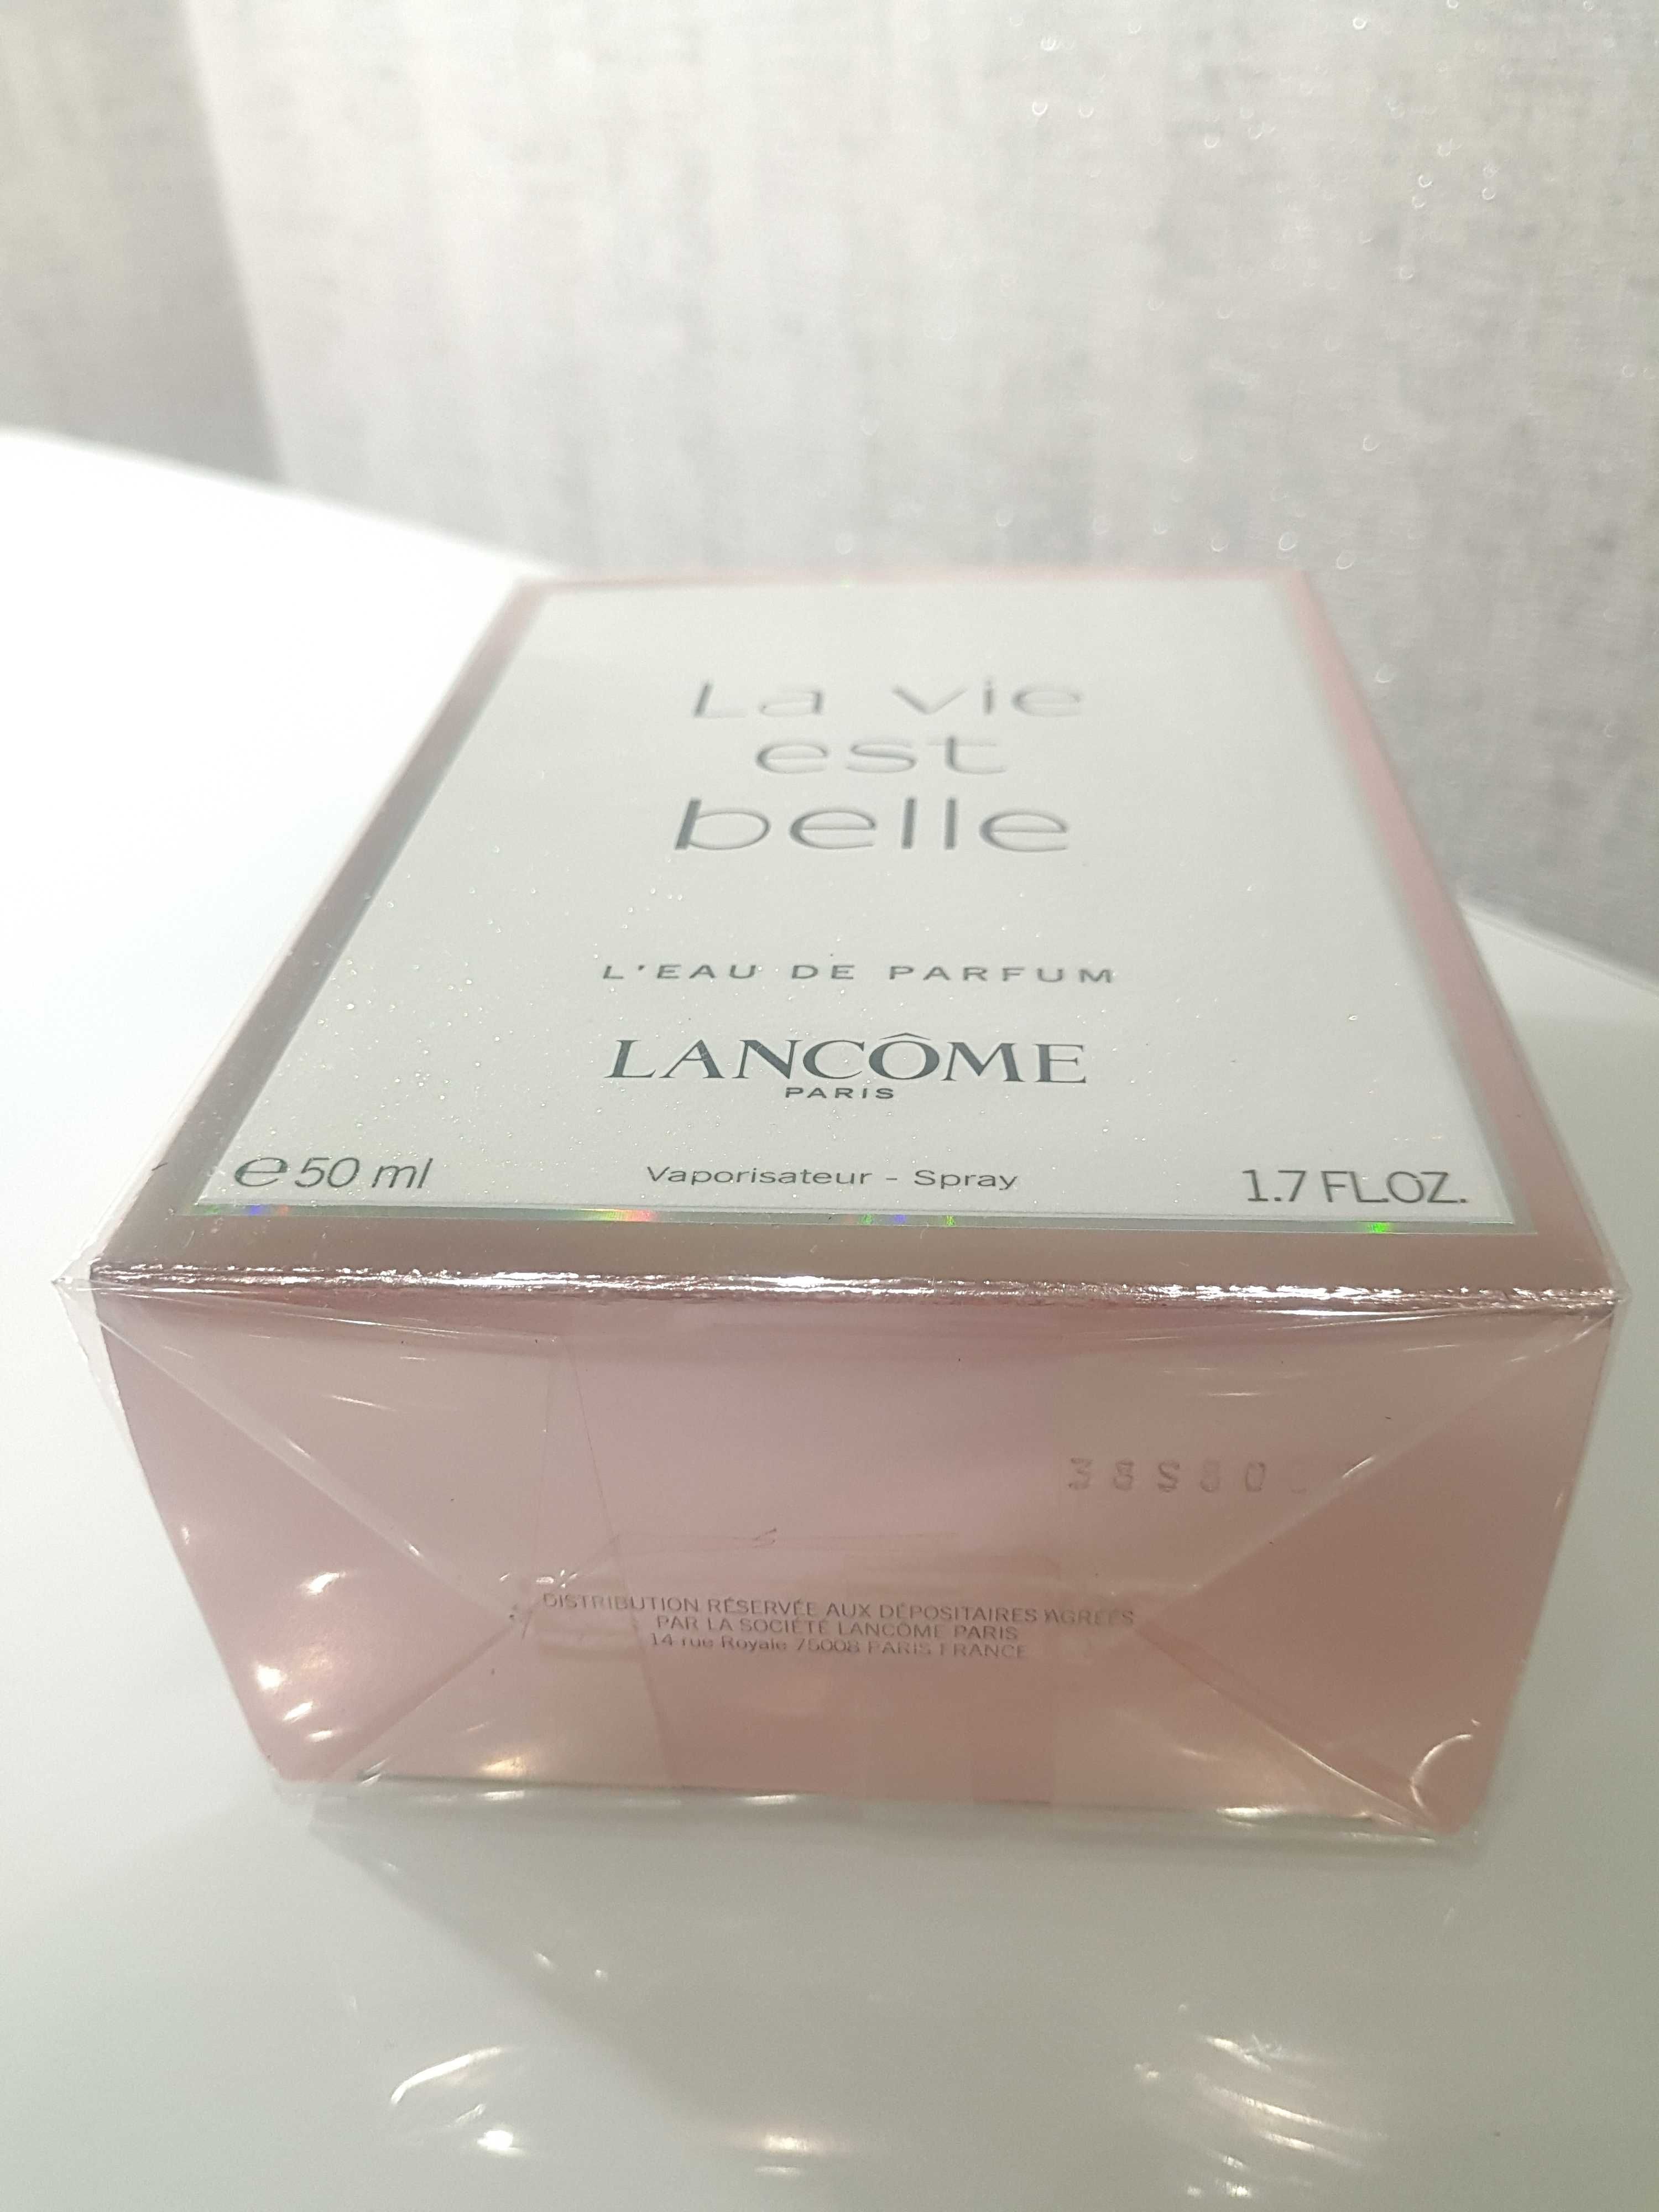 La Vie Est Belle Lancome парф. вода 50 мл